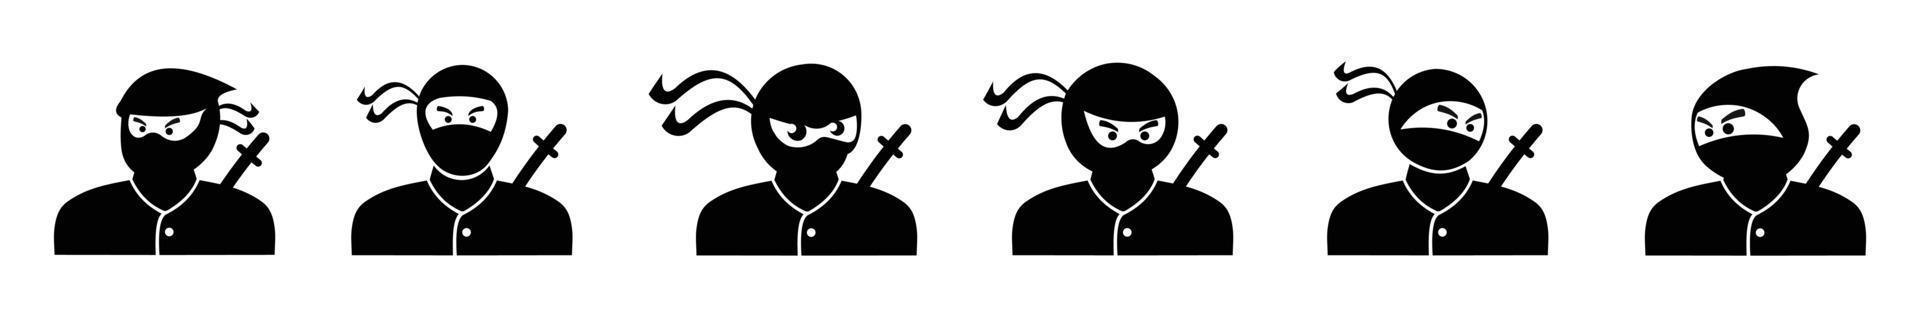 conjunto de diseño de ninja de icono de silueta, conjunto de ninjas en varias poses sobre fondo blanco vector